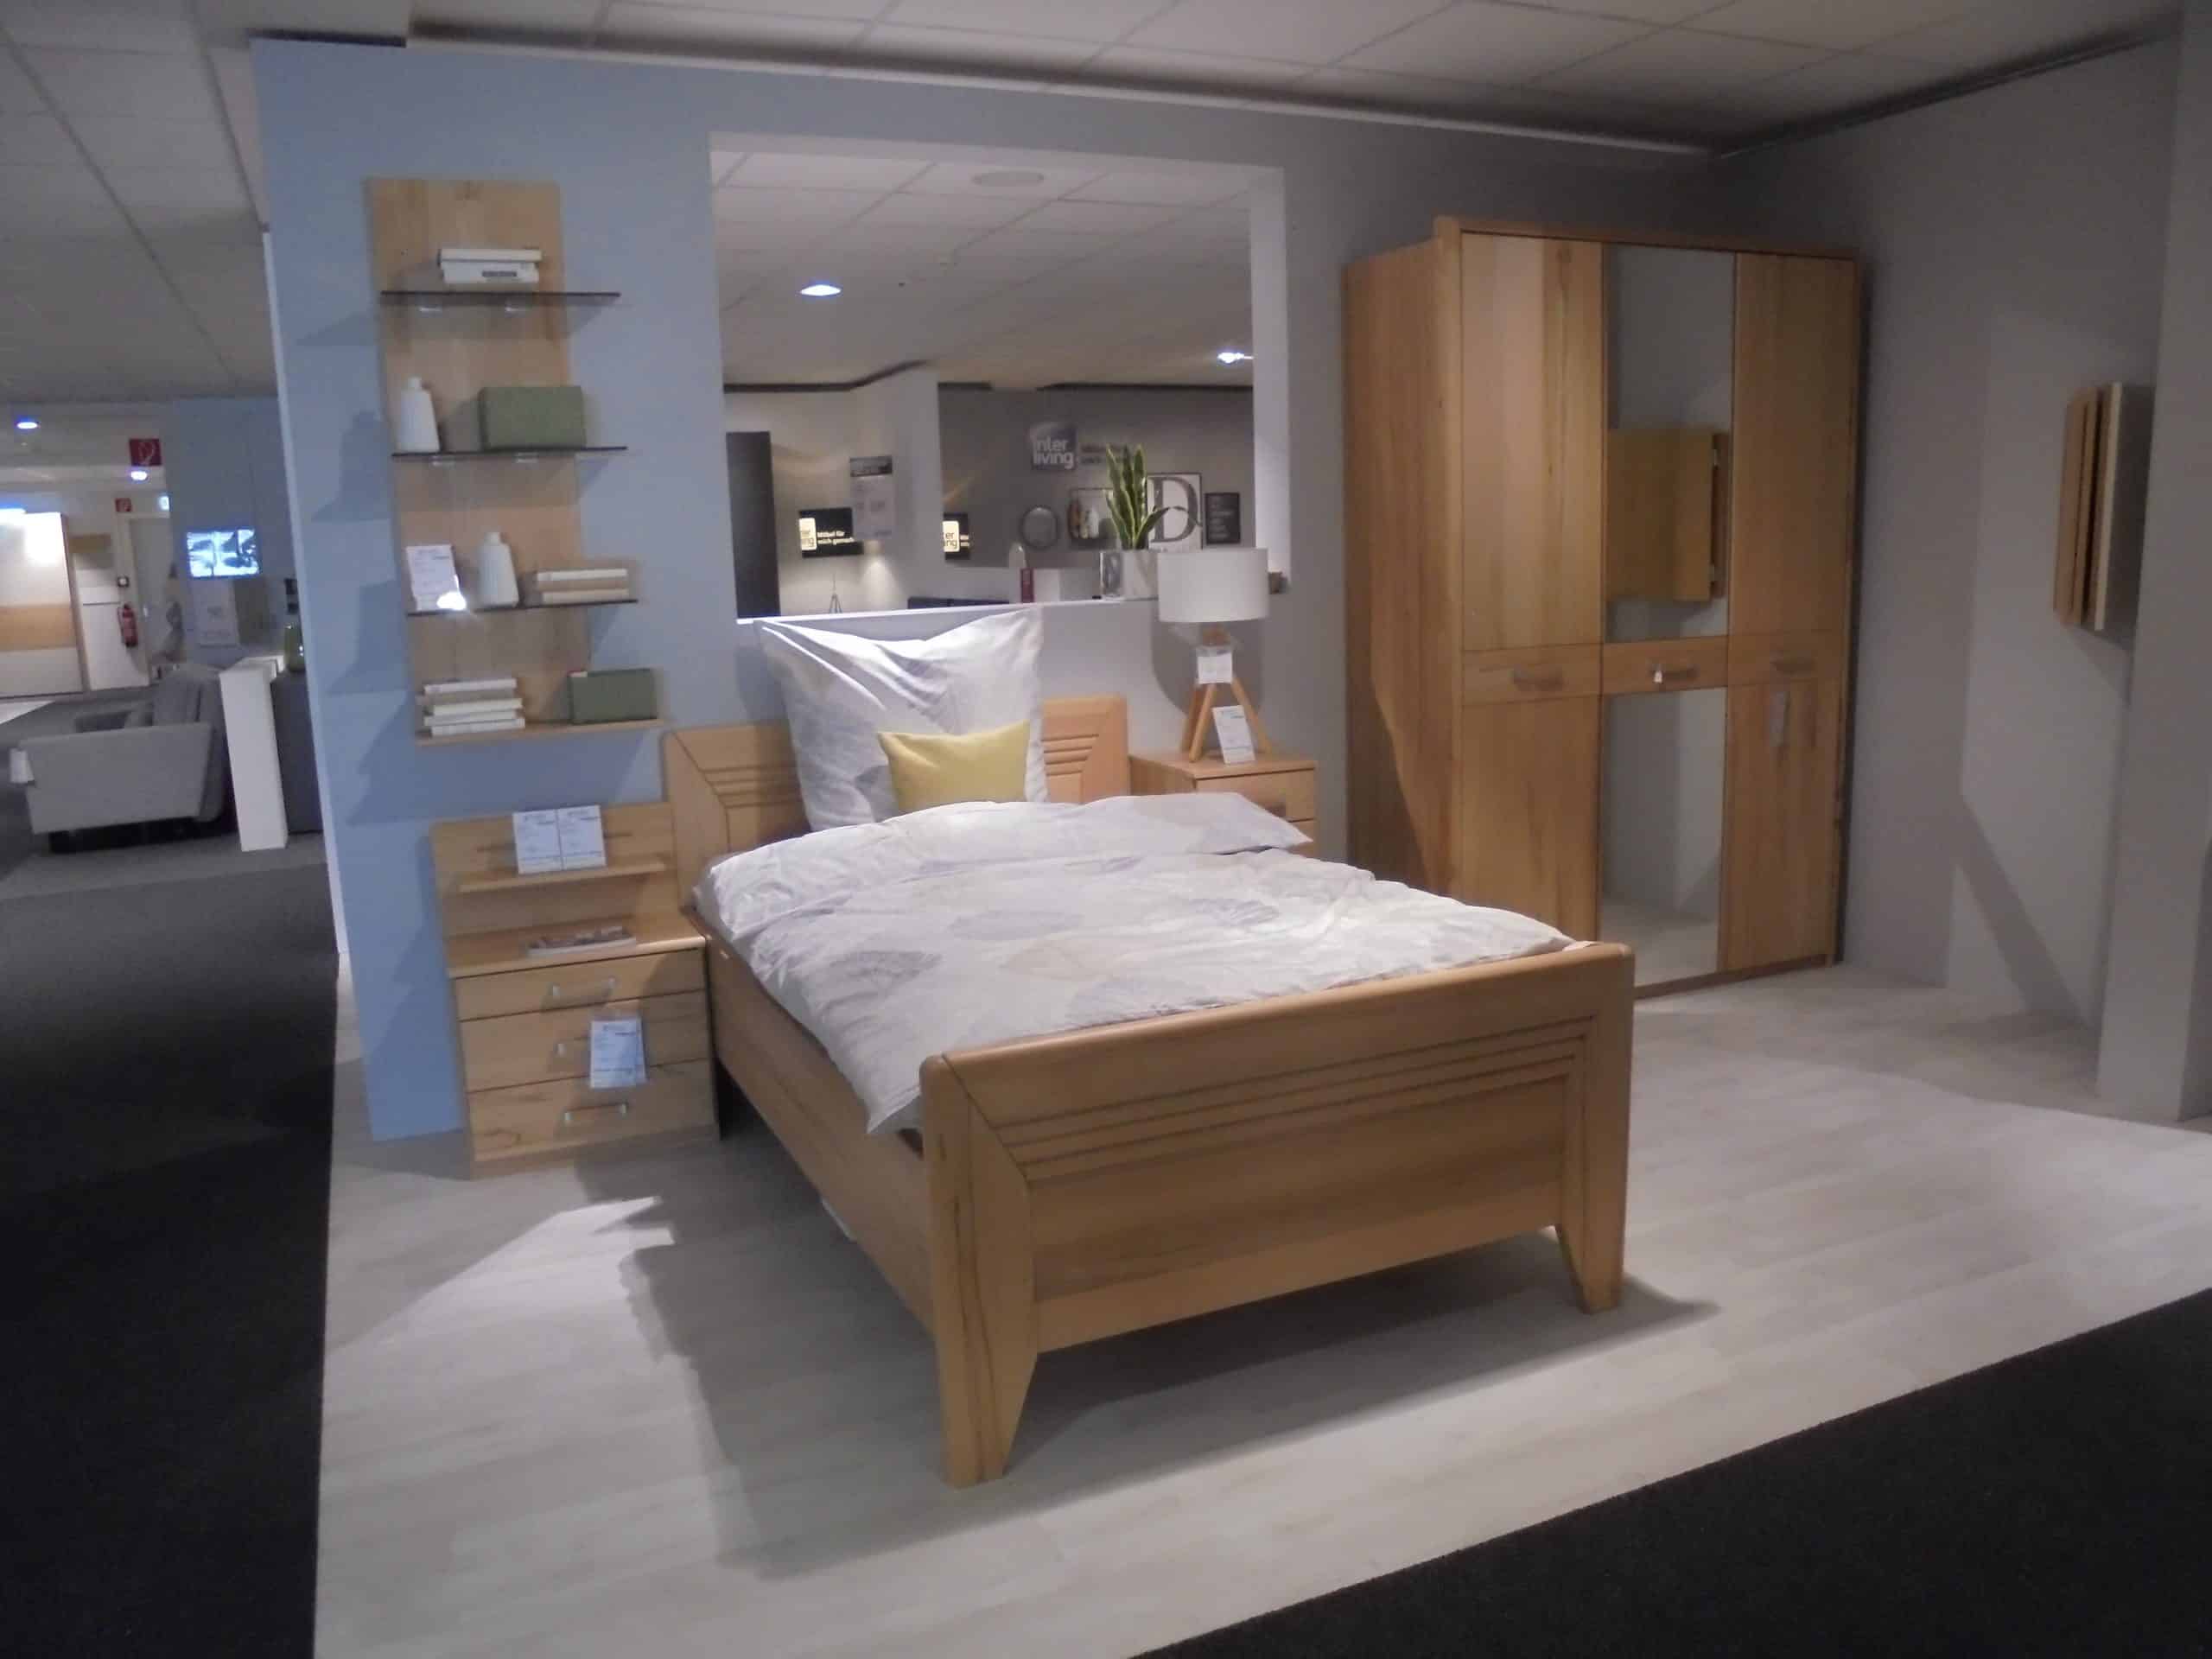 Schlafzimmer Valerie in Kernbuche teilmassiv, bestehend aus Bett, Nako, Kommode und Drehtürenschrank, inkl. Zubehör, bei Möbelhaus Thiex im Abverkauf über 32 % reduziert.